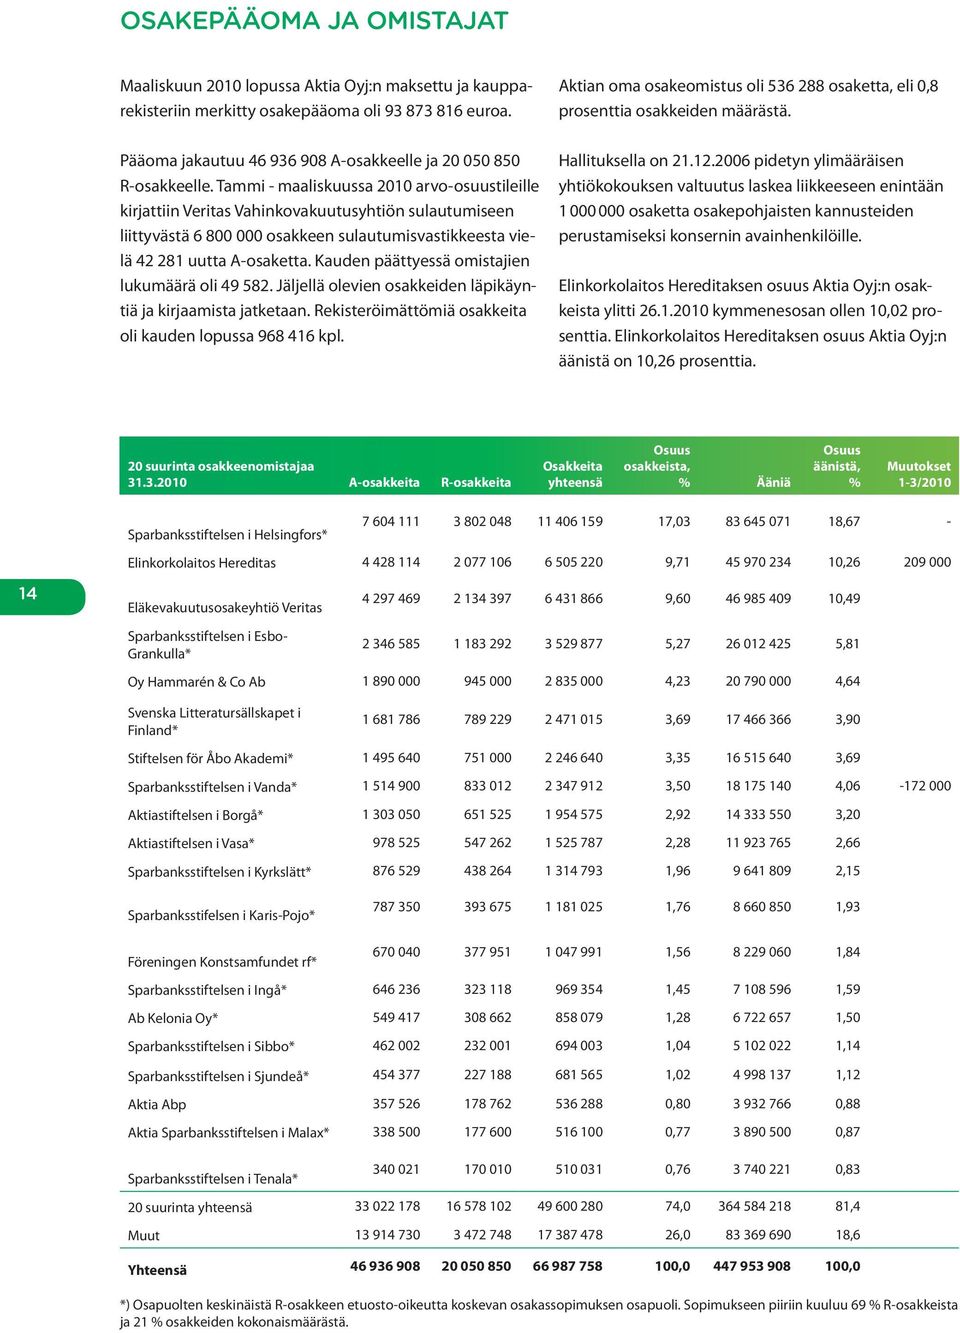 Tammi - maaliskuussa 2010 arvo-osuustileille kirjattiin Veritas Vahinkovakuutusyhtiön sulautumiseen liittyvästä 6 800 000 osakkeen sulautumisvastikkeesta vielä 42 281 uutta A-osaketta.